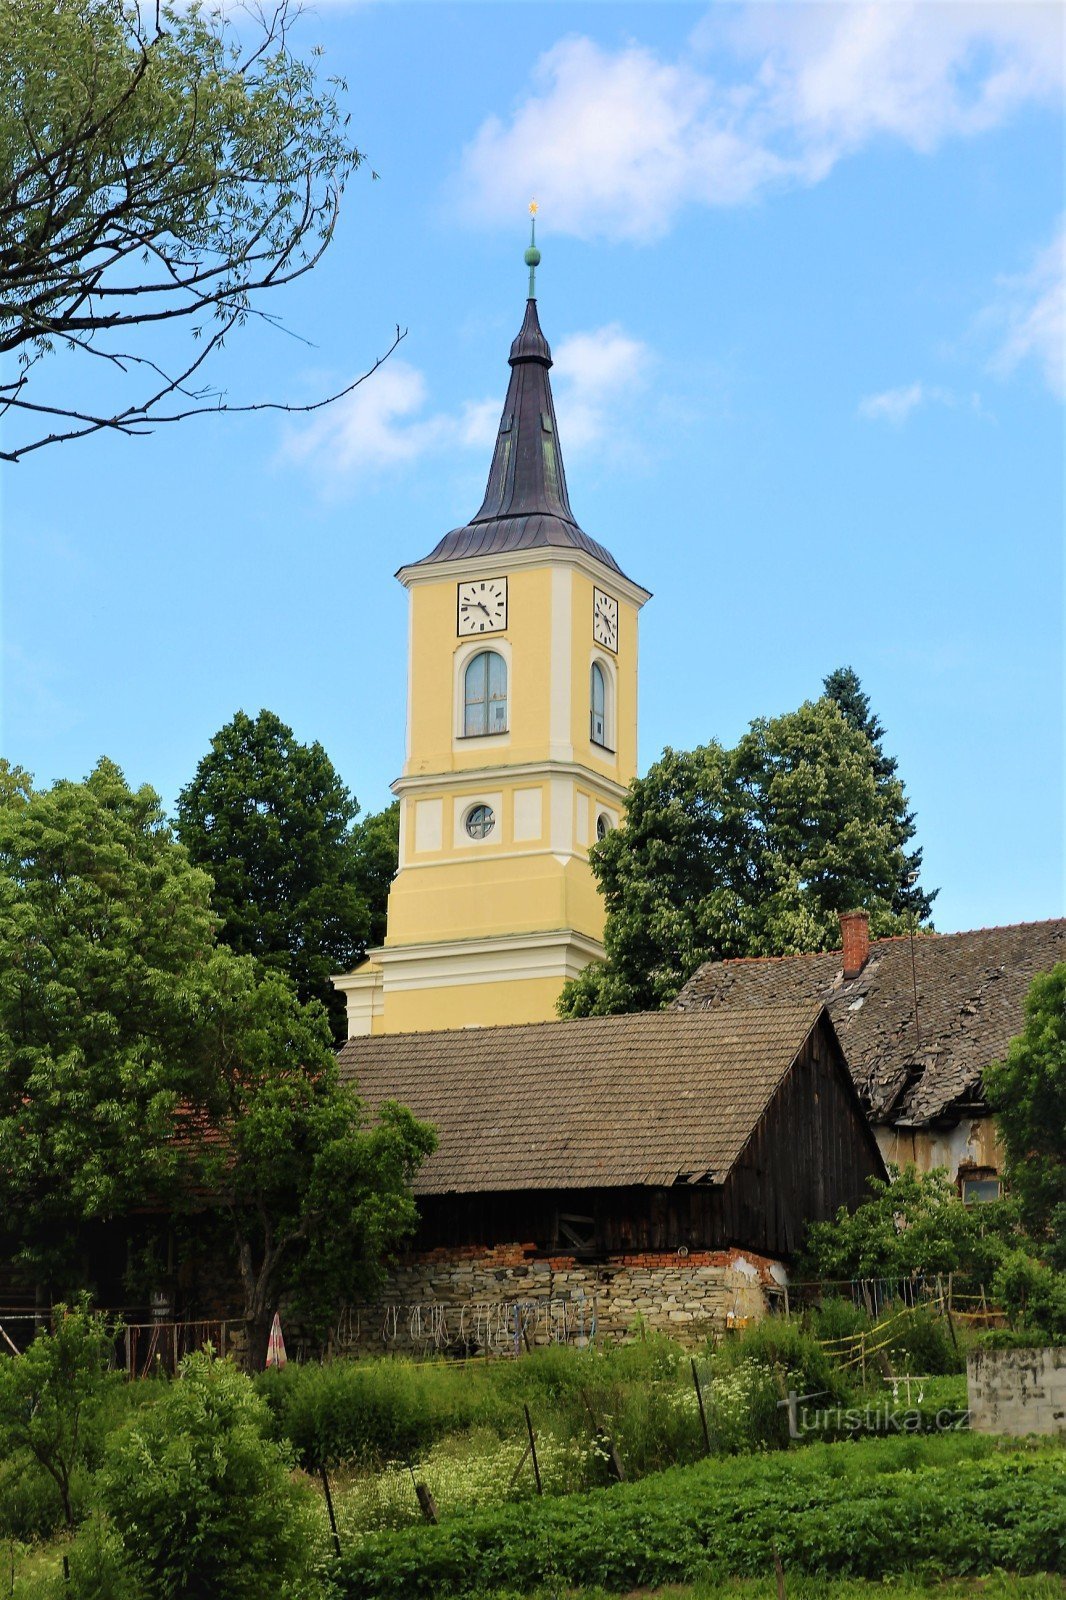 The church as seen from Hodonínka